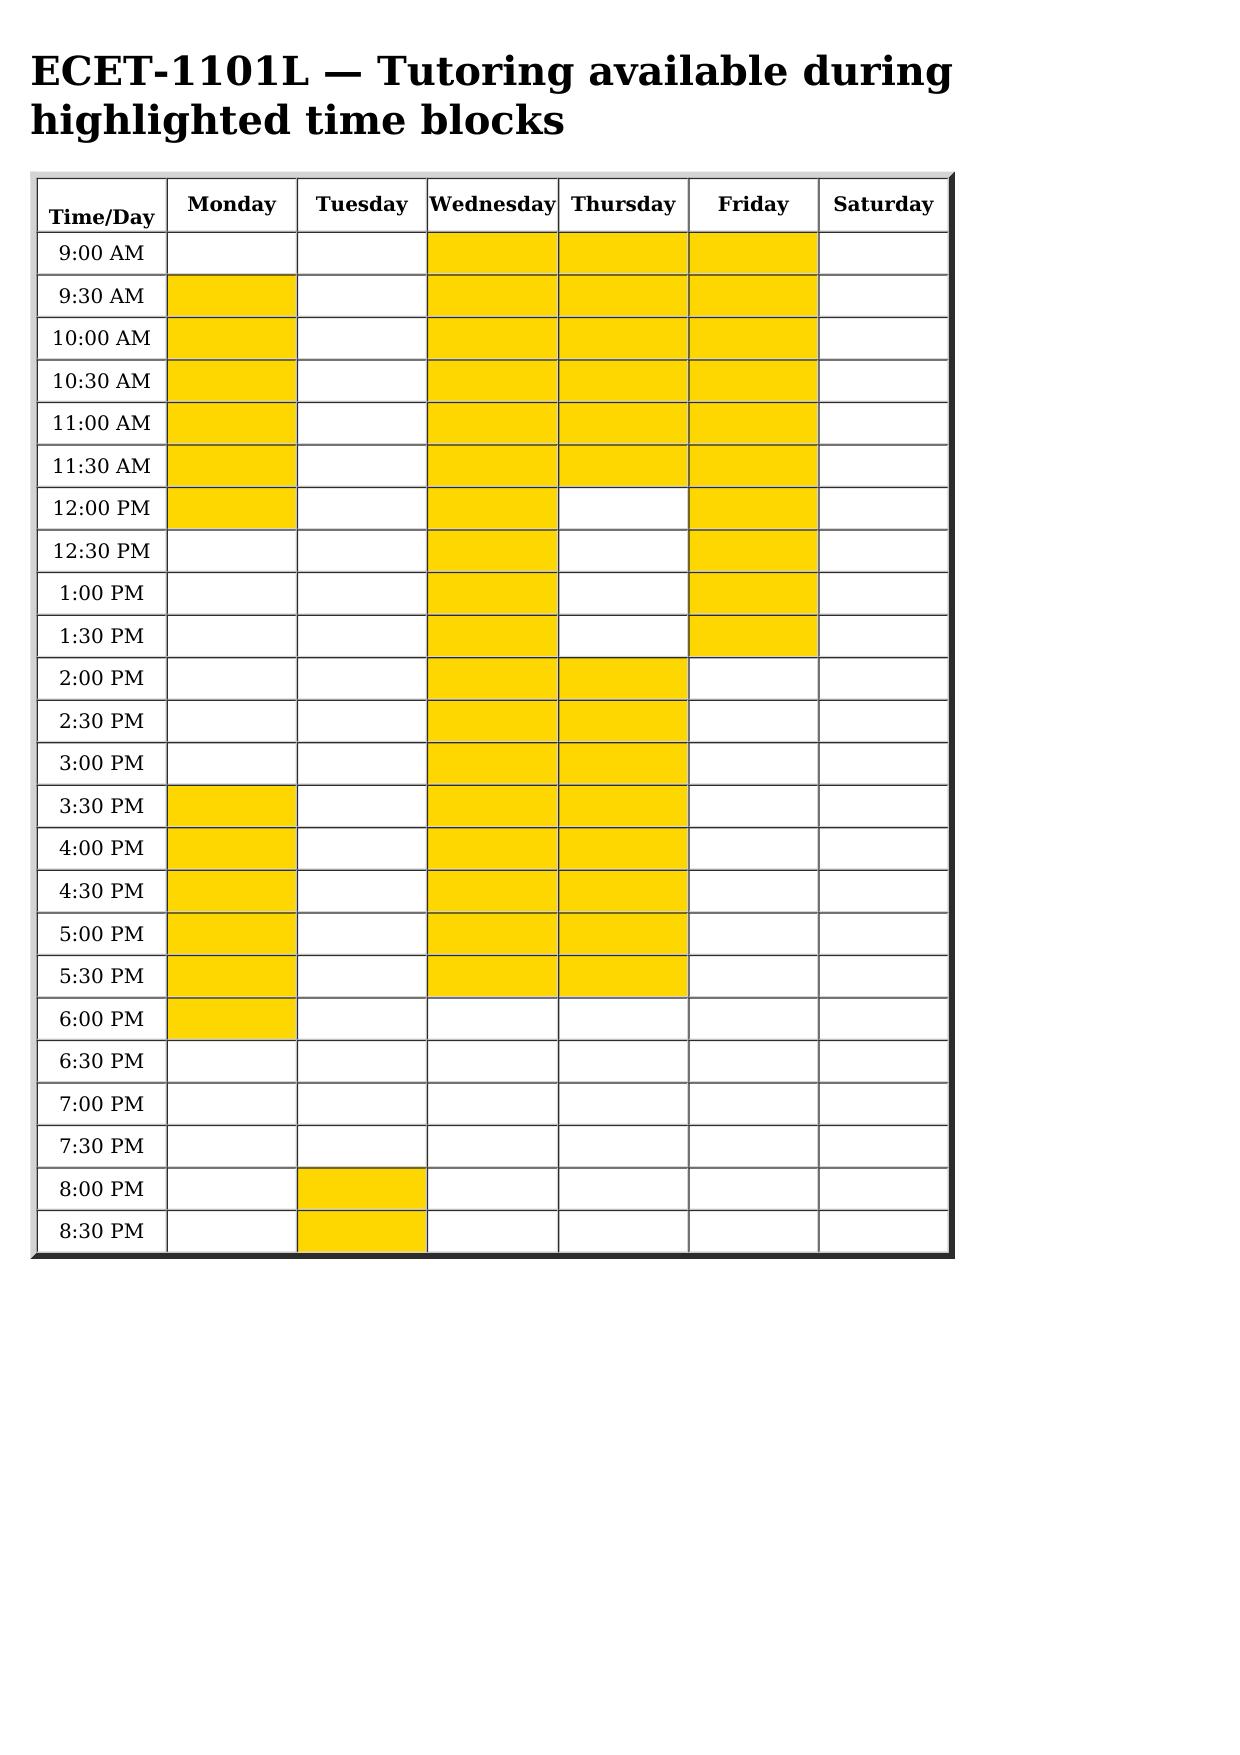 ecet 1101 schedule